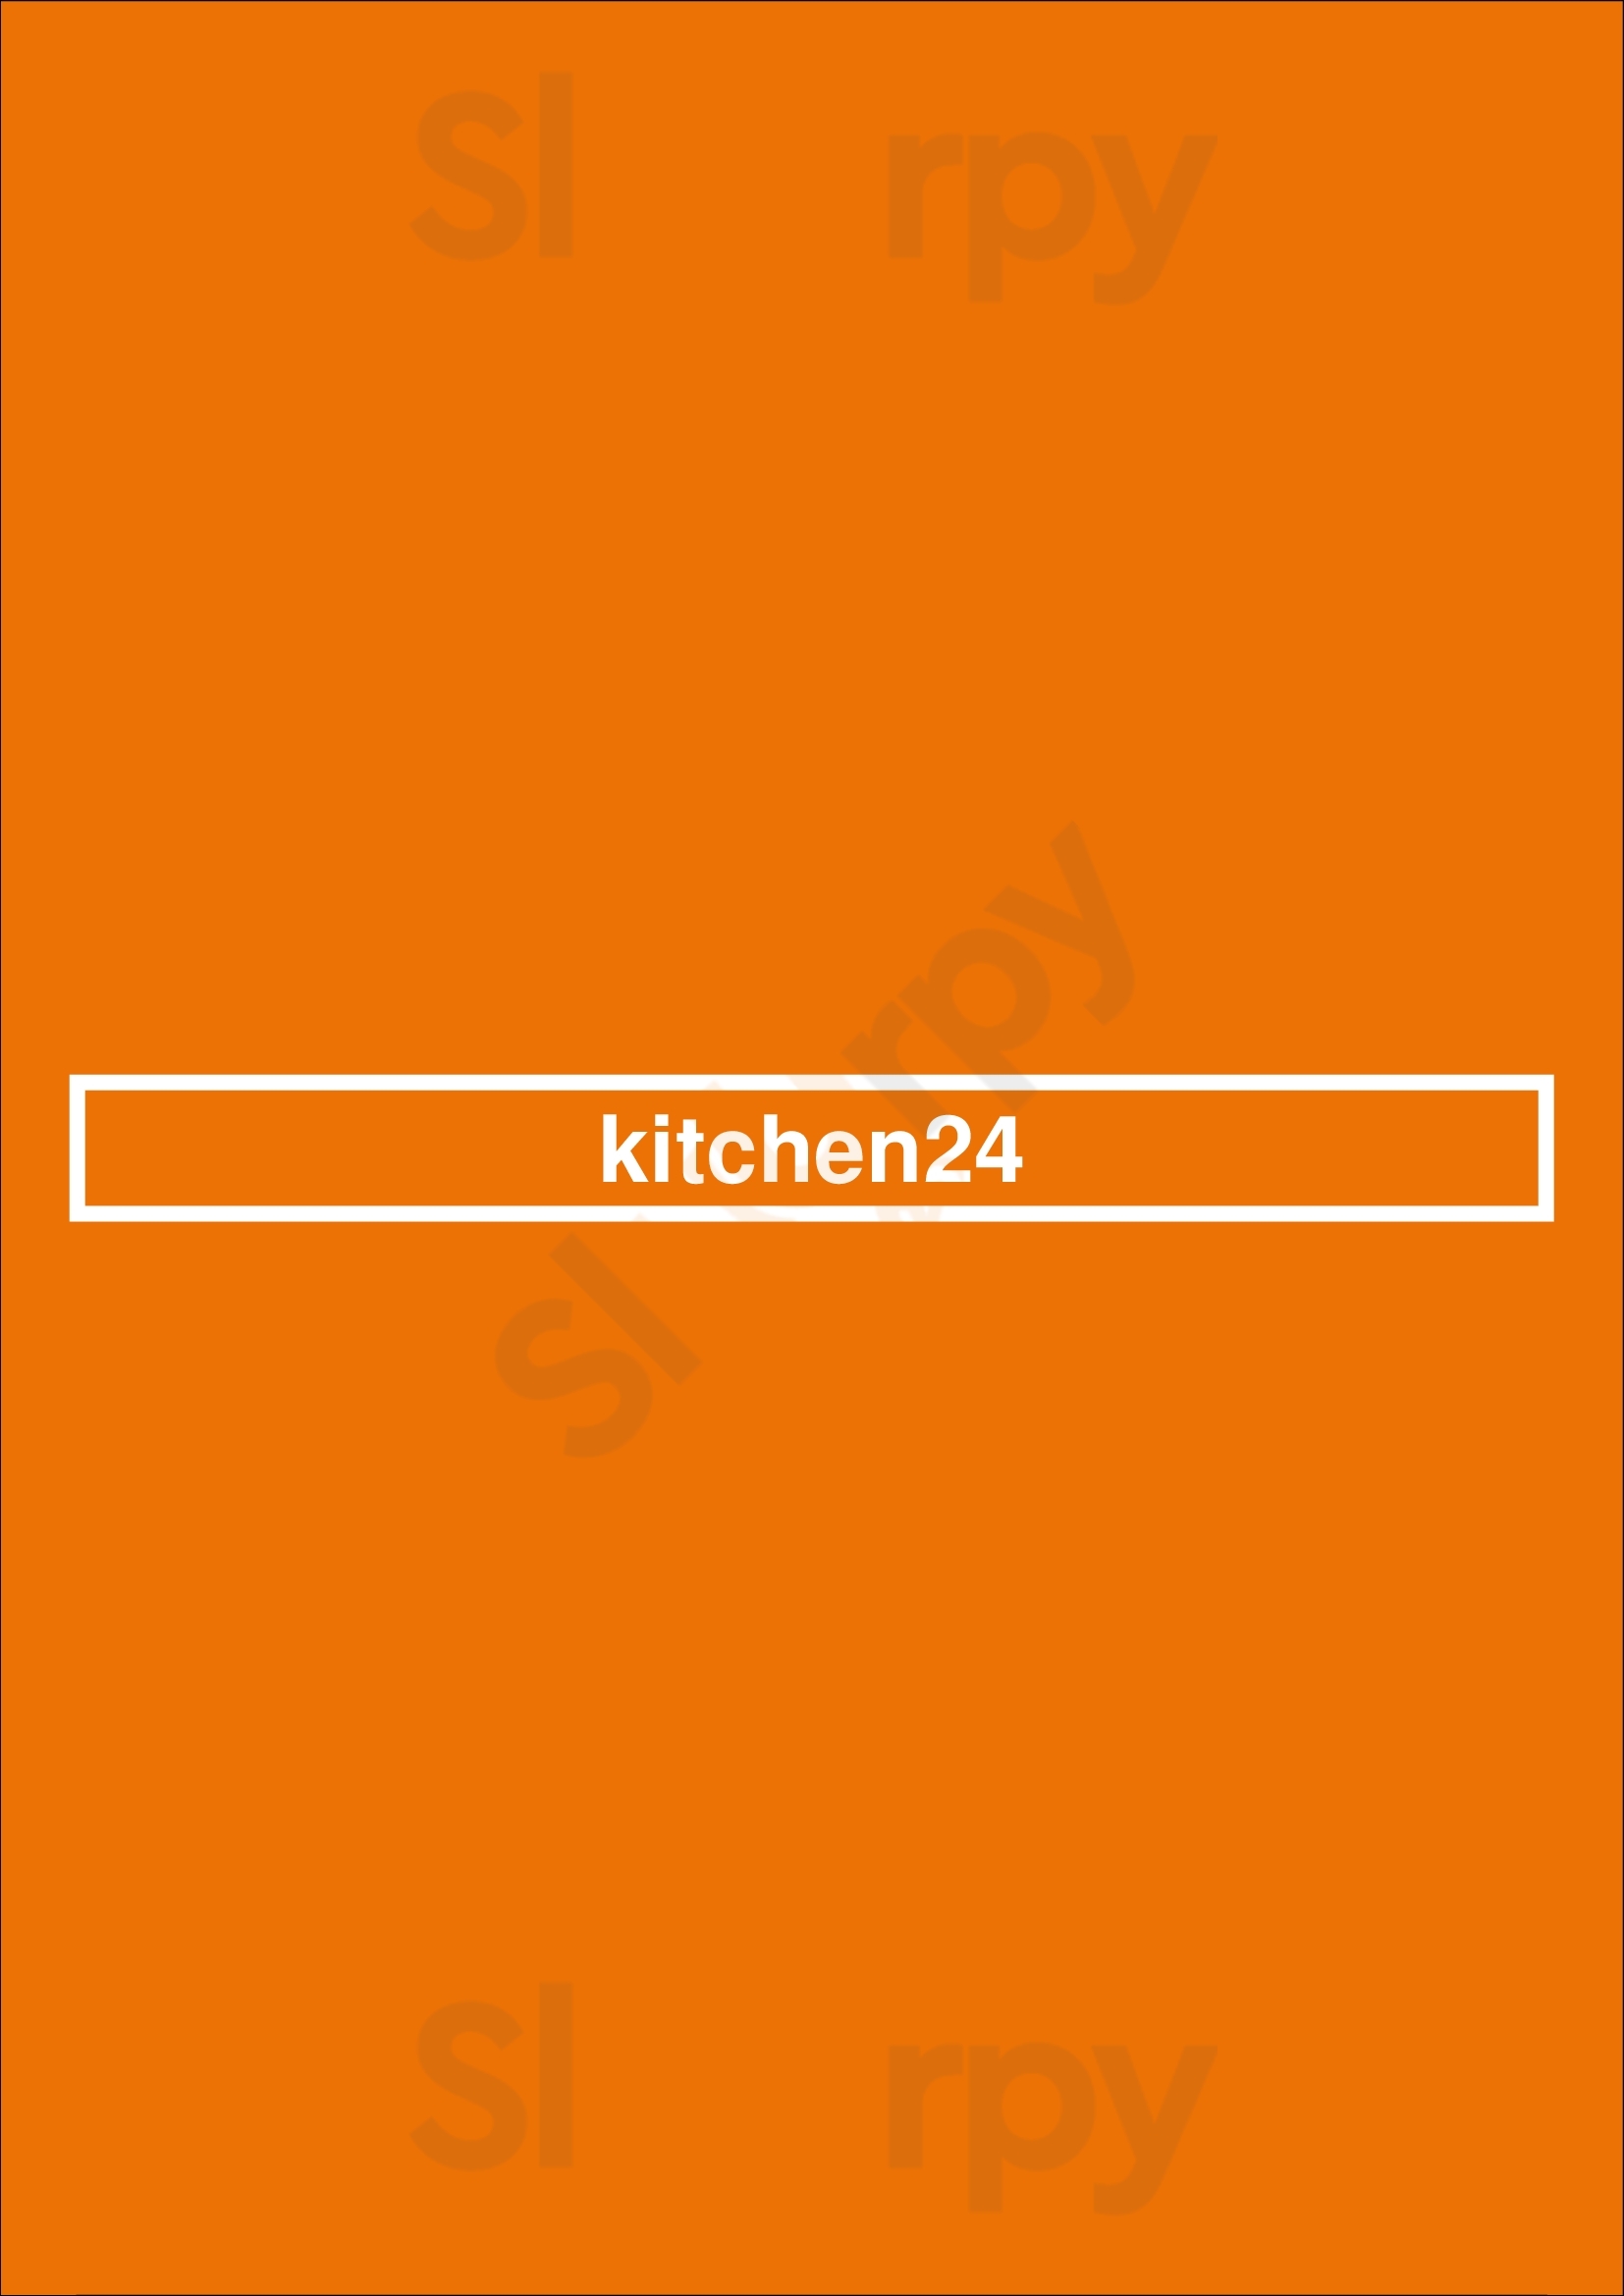 Kitchen24 Los Angeles Menu - 1